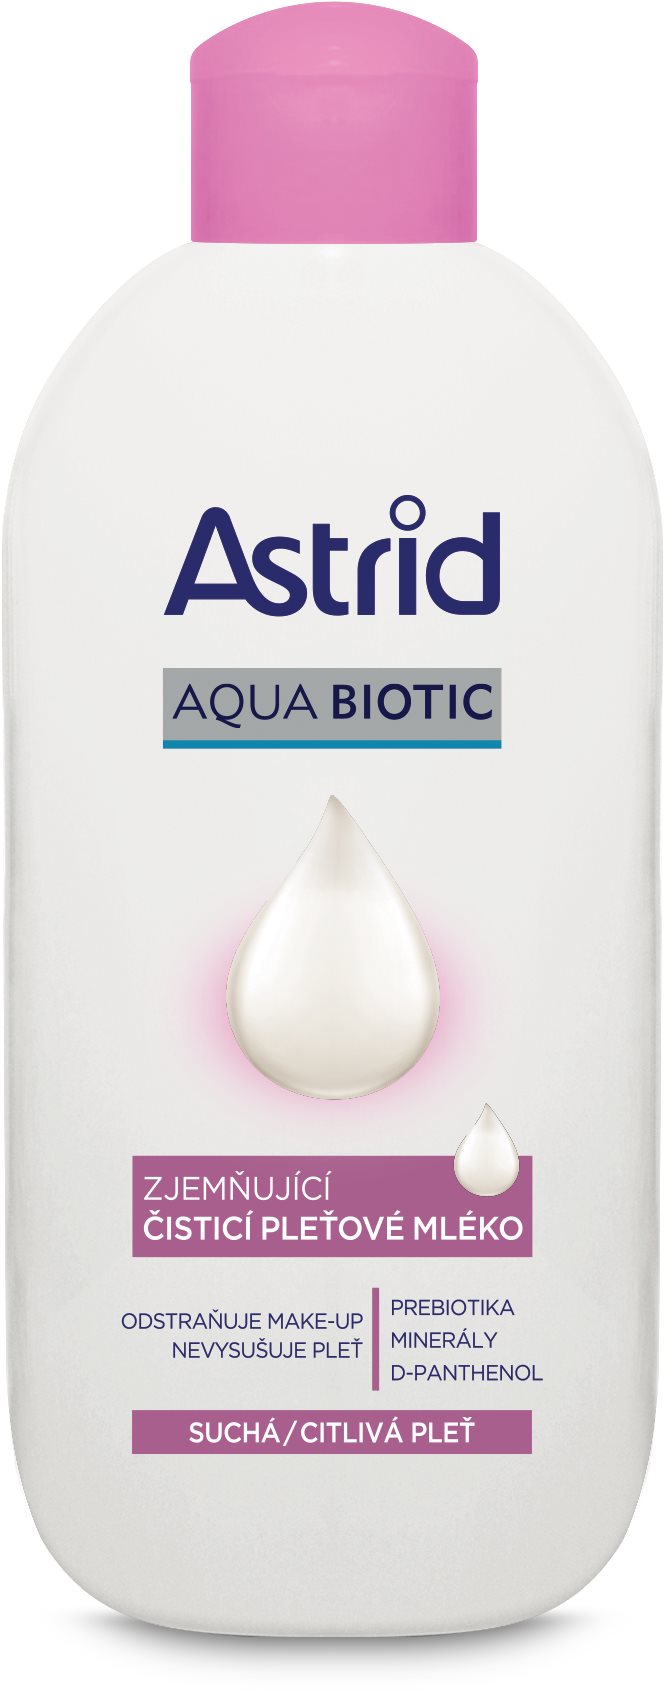 ASTRID Soft Skin arctej 200 ml